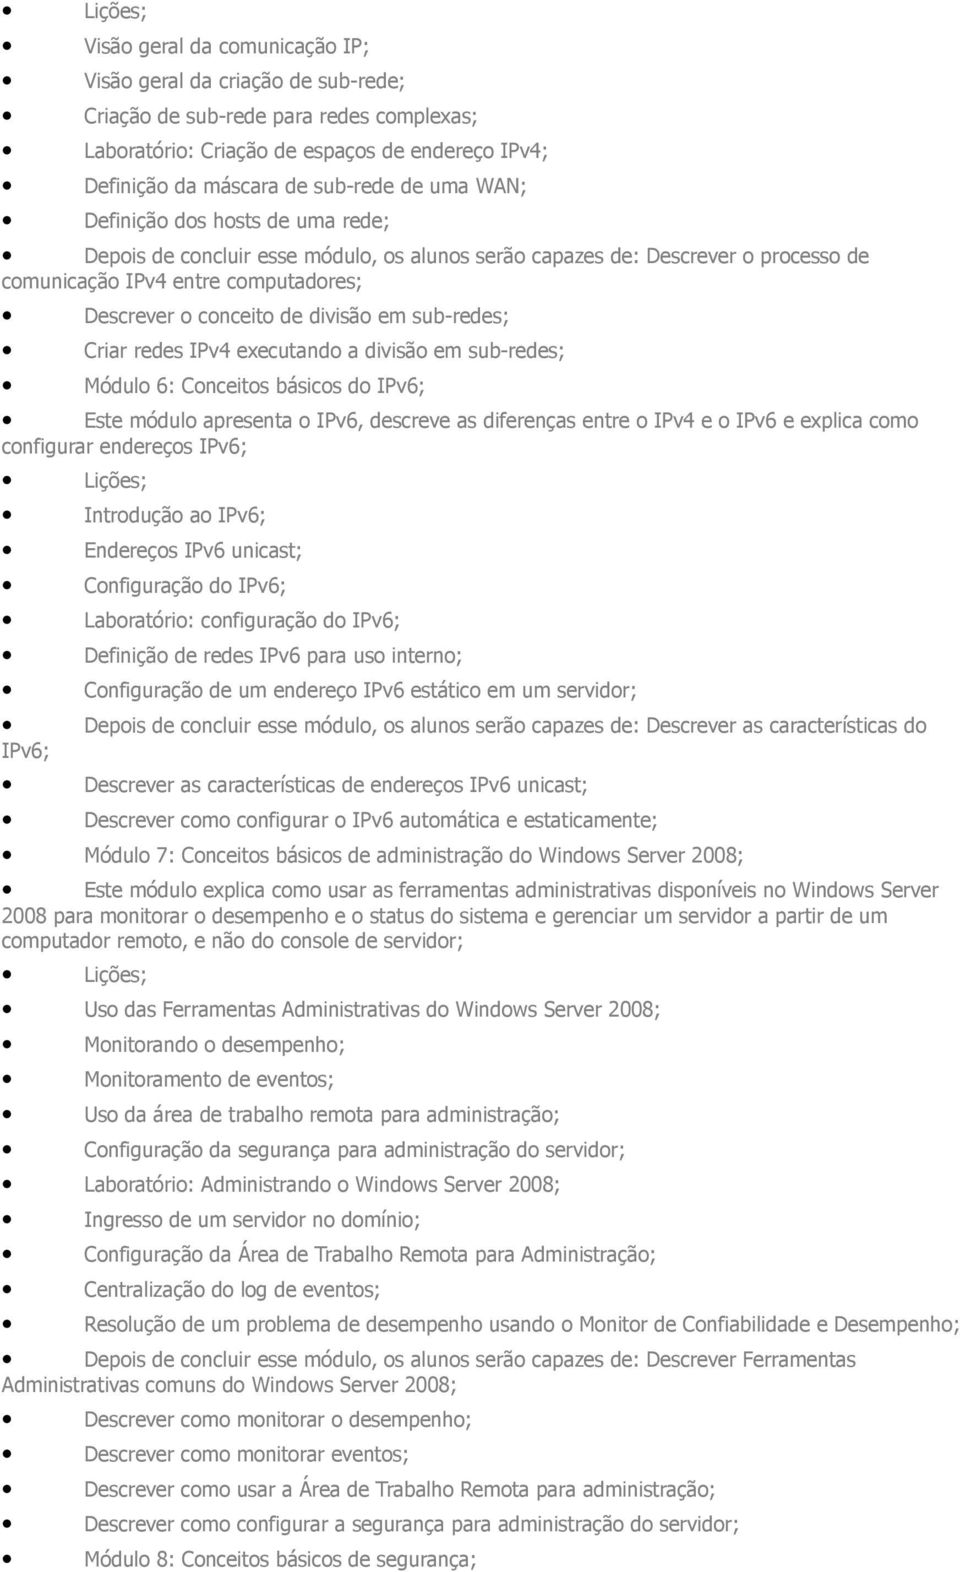 divisão em sub-res; Módulo 6: Conceitos básicos do IPv6; Este módulo apresenta o IPv6, screve as diferenças entre o IPv4 e o IPv6 e explica como configurar enreços IPv6; Lições; Introdução ao IPv6;